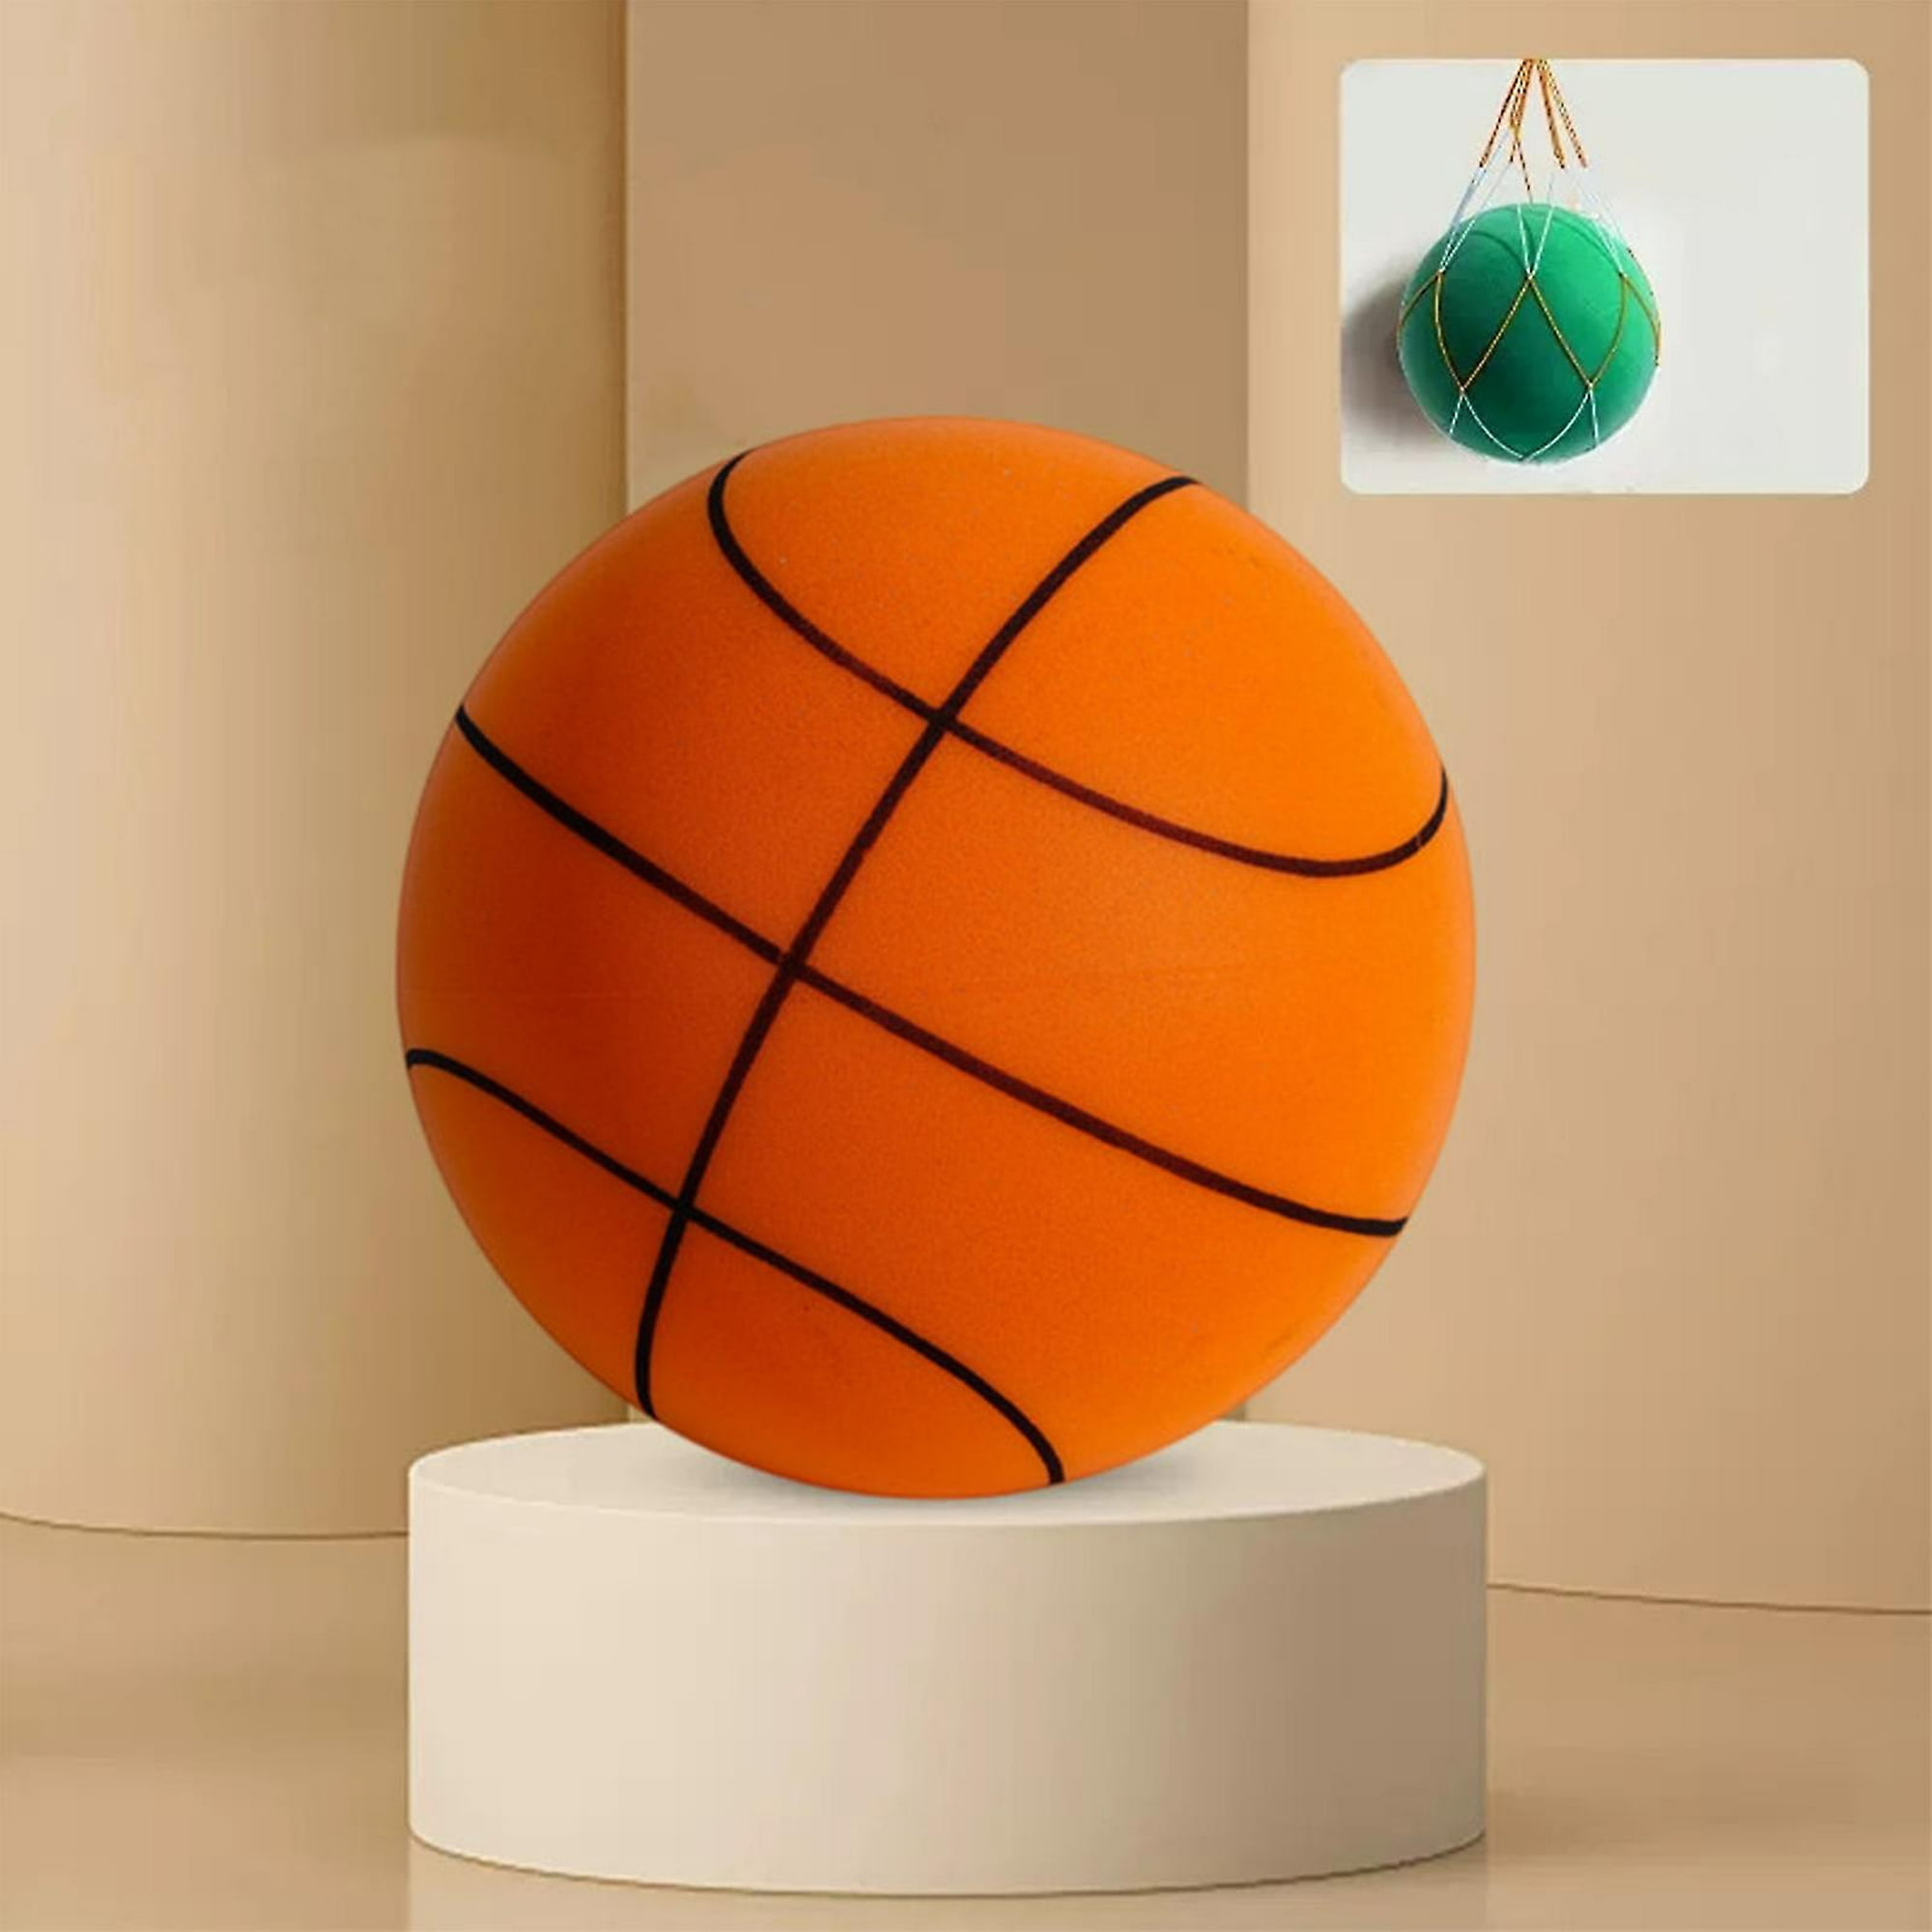 Rebote pelota silenciosa baloncesto silencioso interior 24 cm